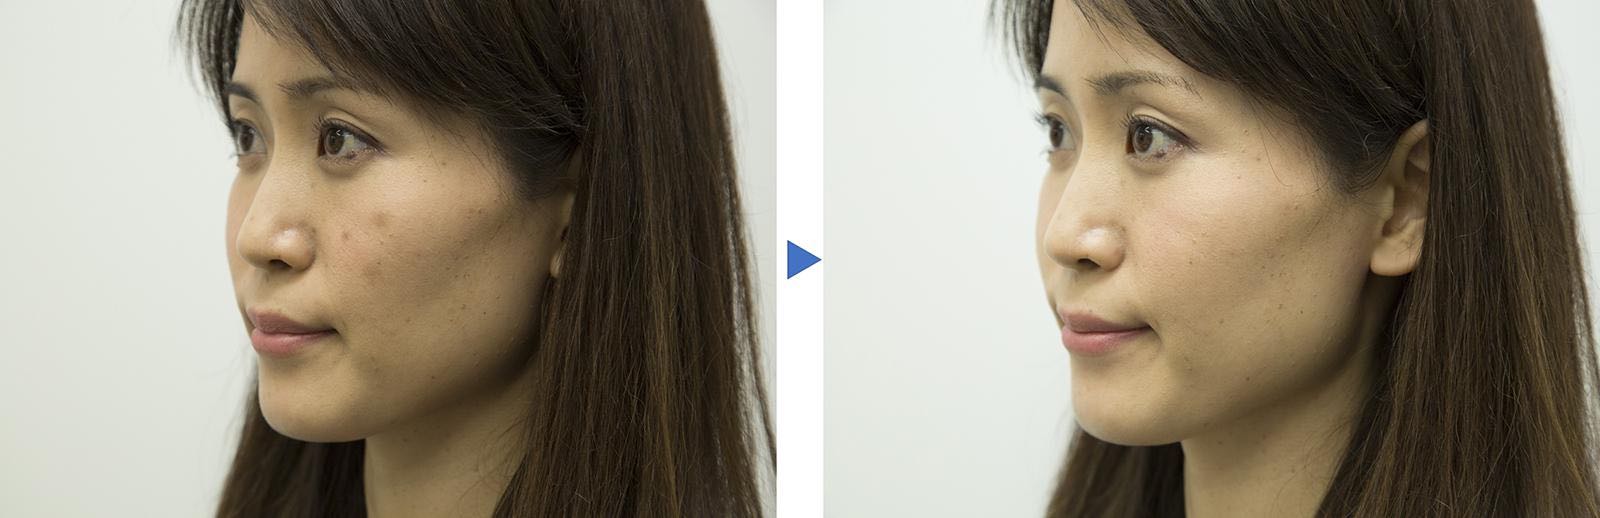 Panasonic lanza una contribución innovadora al mundo de la belleza: la hoja de maquillaje